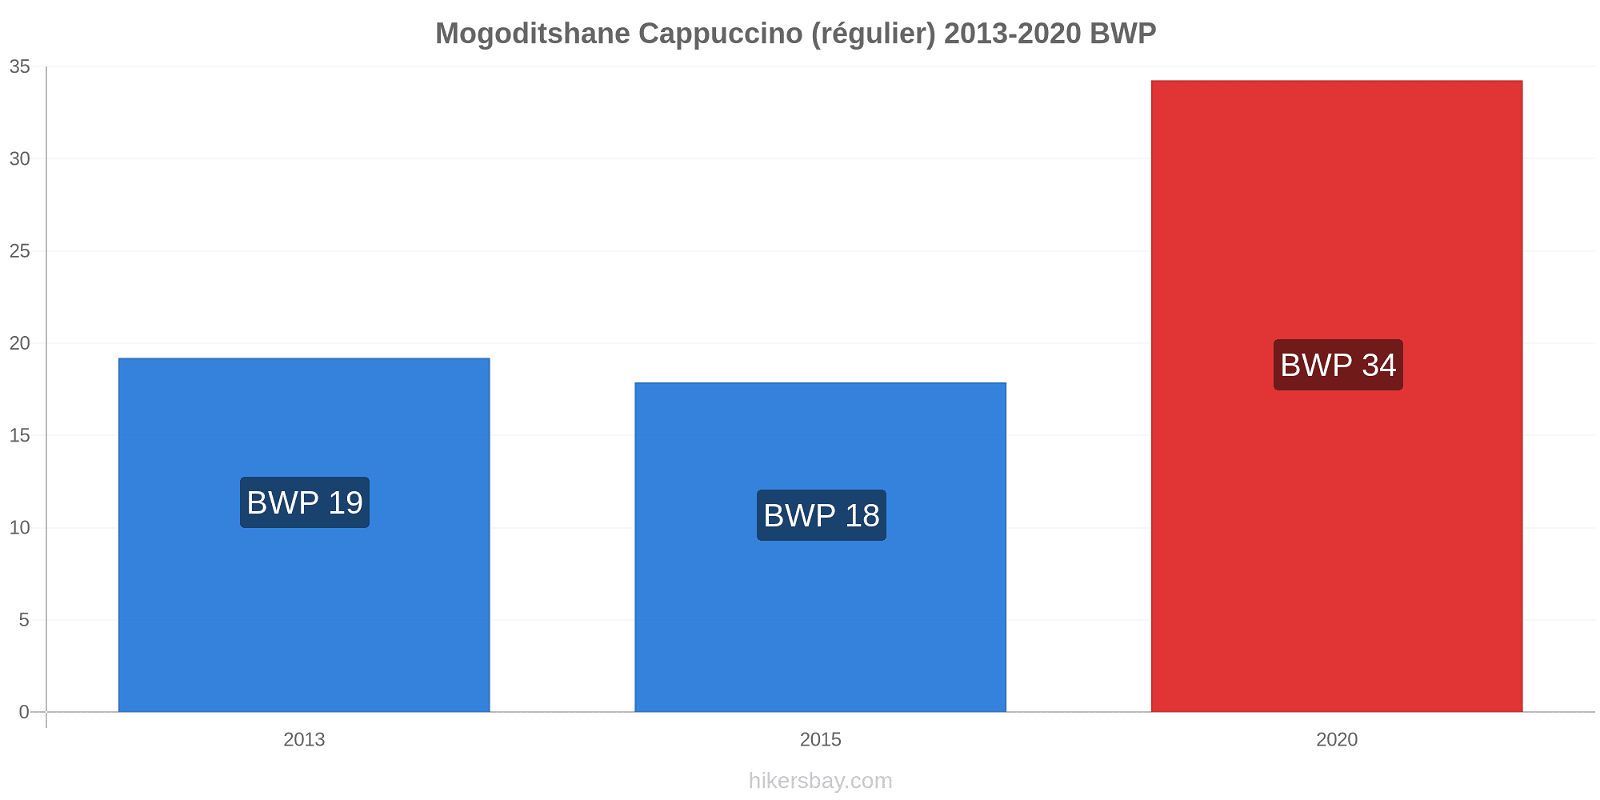 Mogoditshane changements de prix Cappuccino (régulier) hikersbay.com